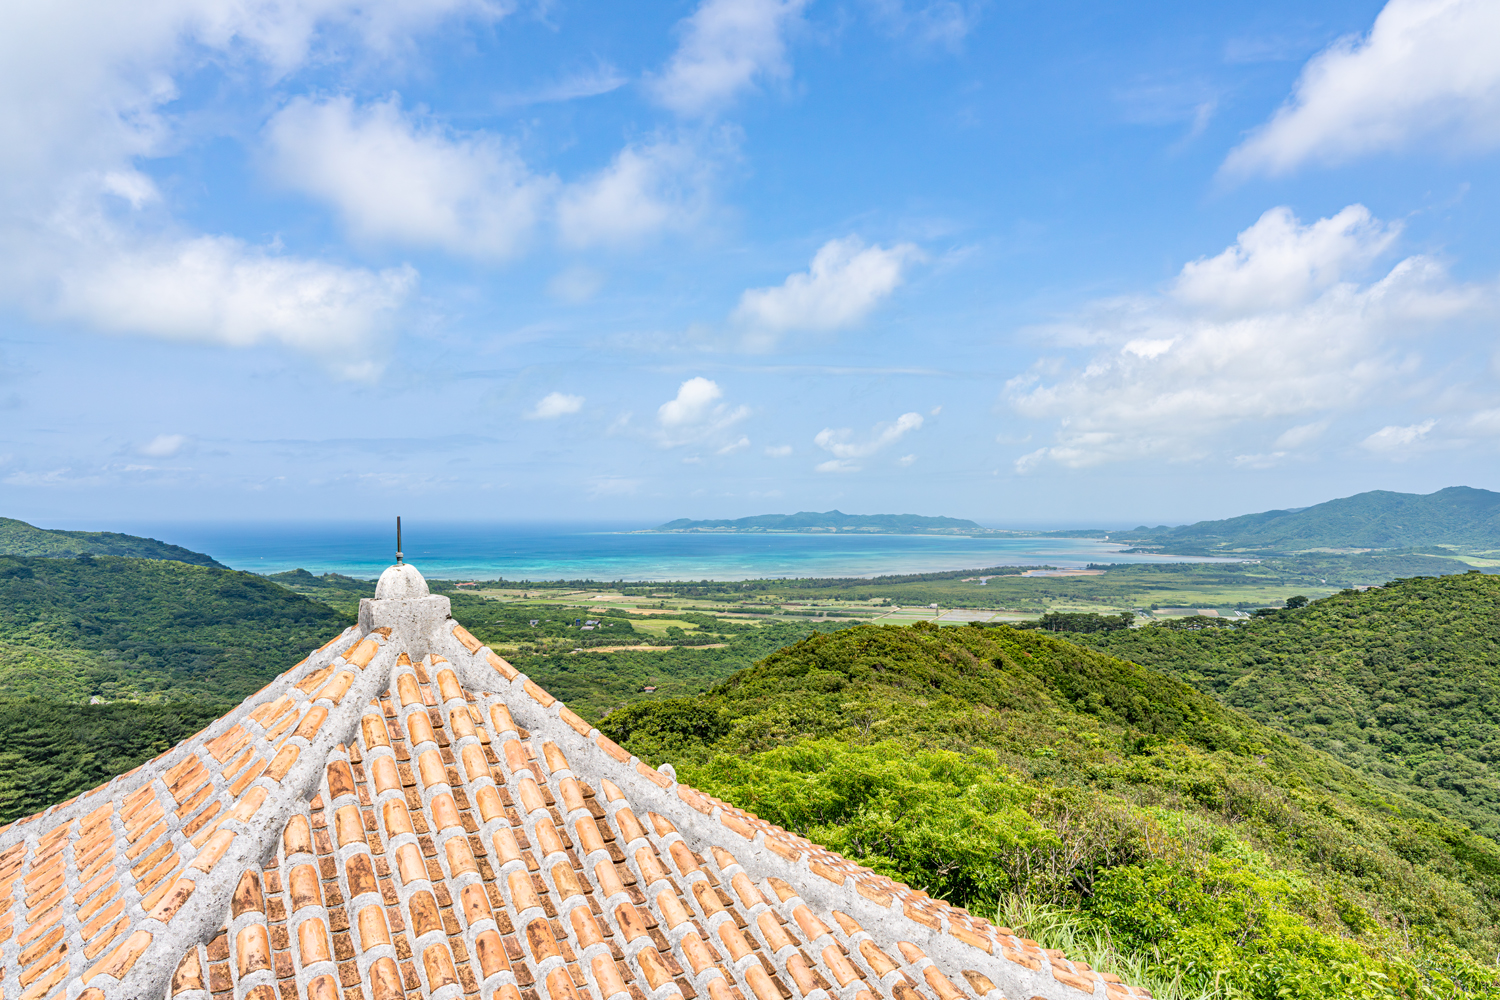 エメラルドの海を見る展望台の屋根と石垣島の風景 / Scenery of Ishigaki Island